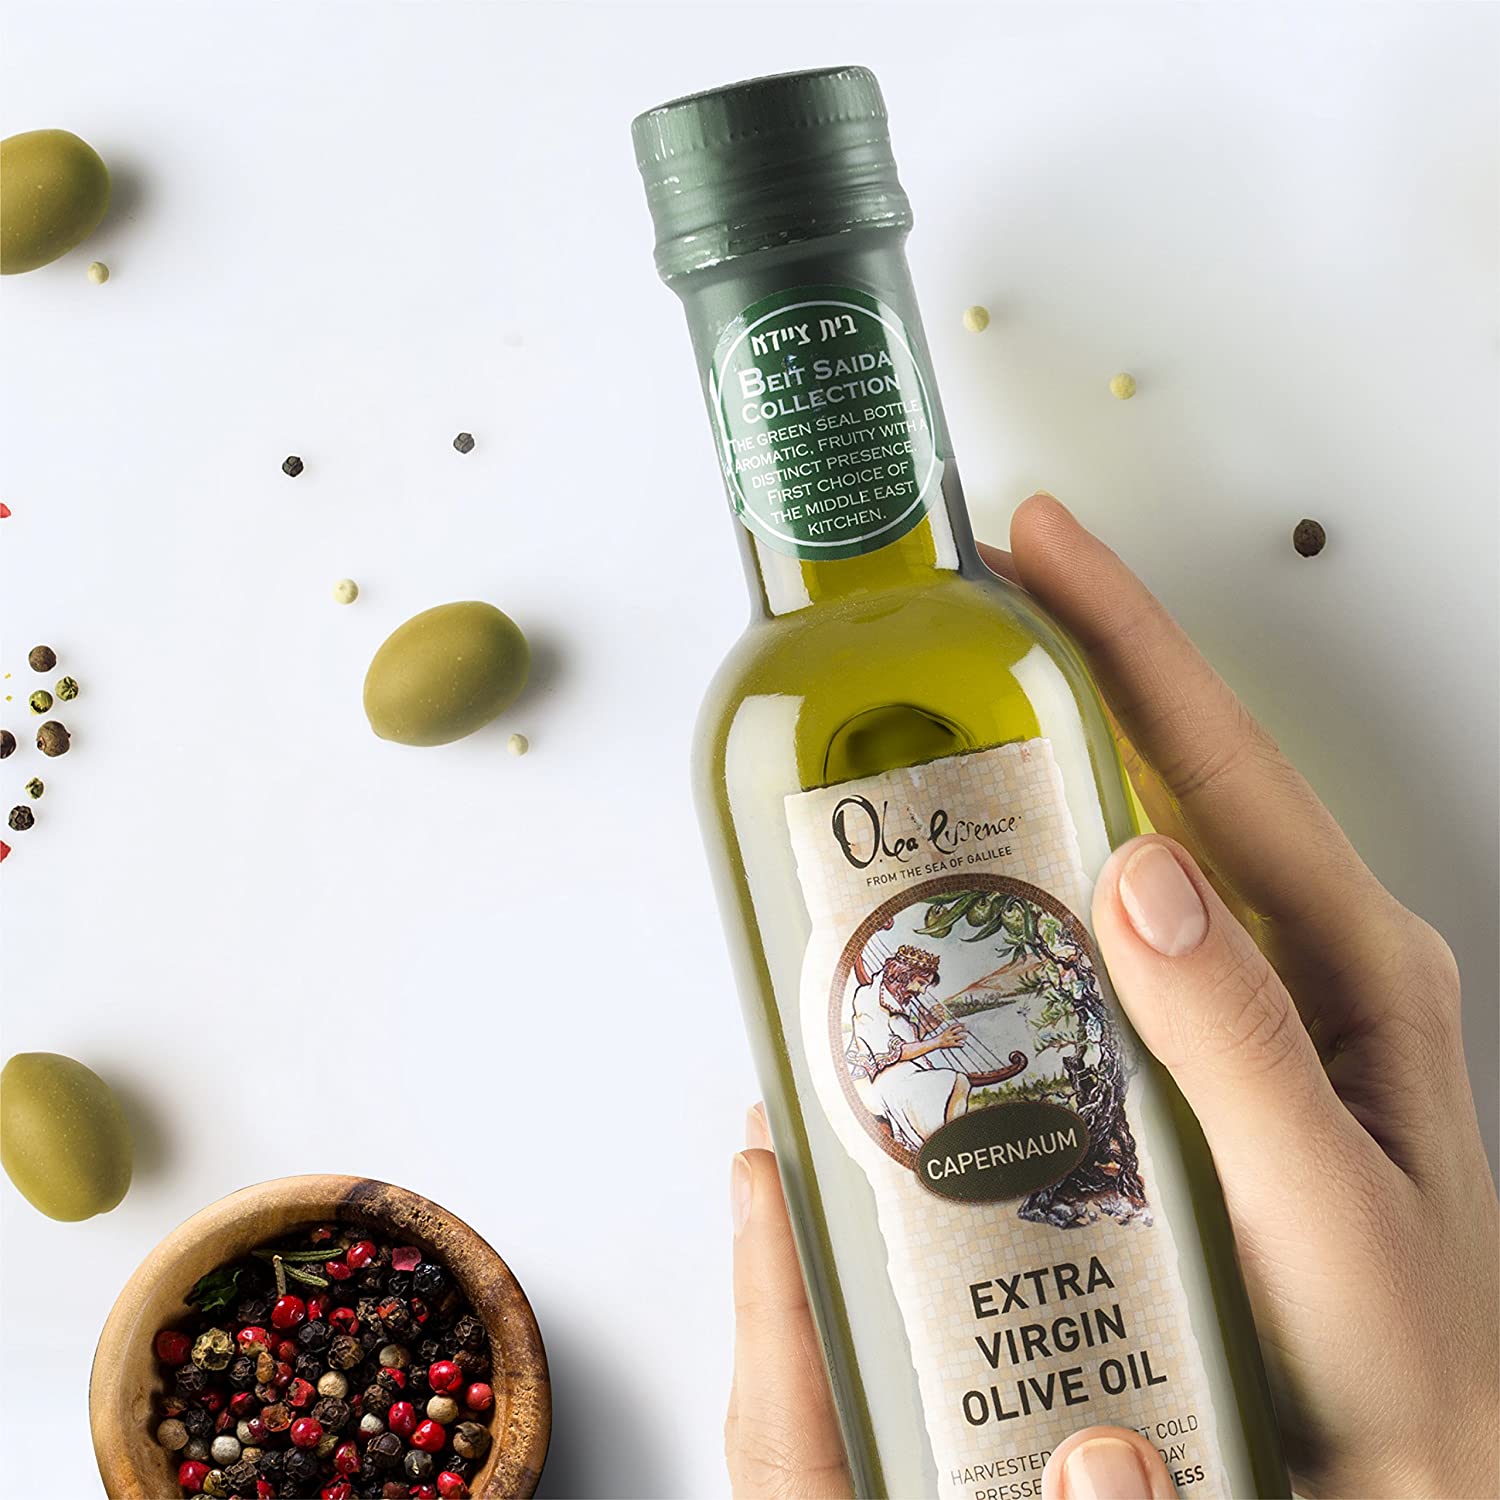 Beit Saida (Green Seal) Extra Virgin Olive Oil - Olea Essence - Israel Menu